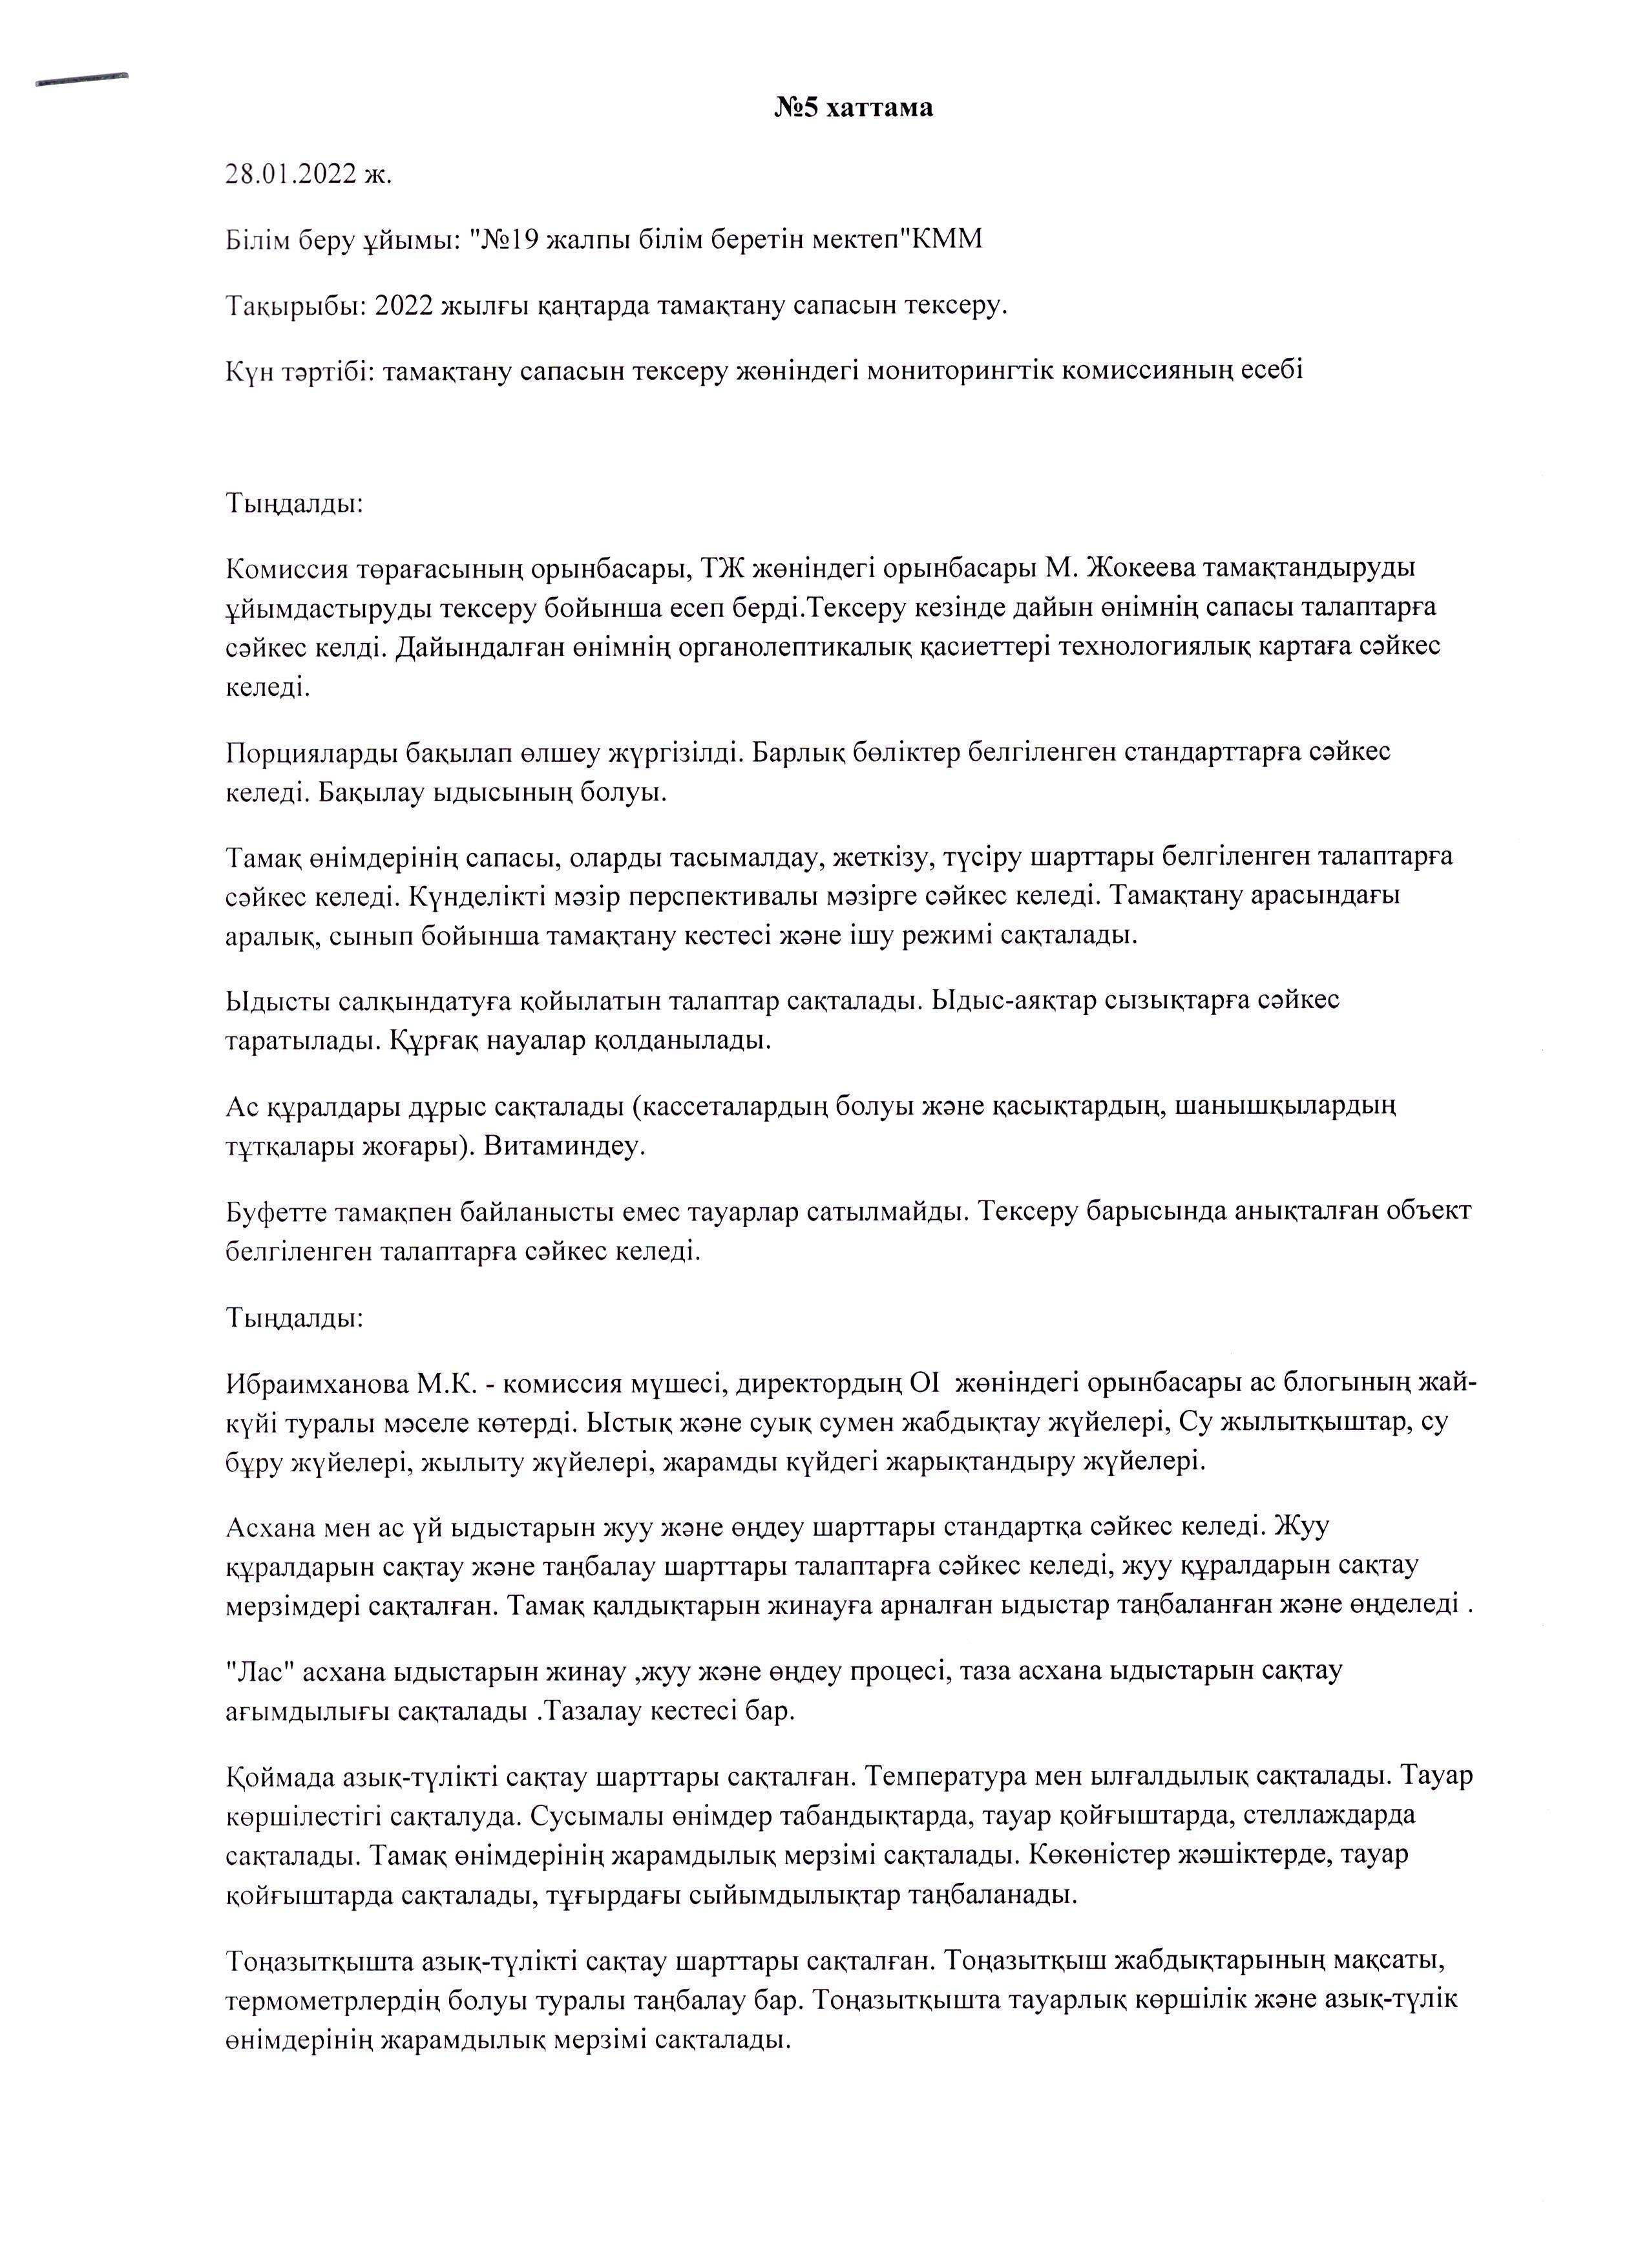 Қаңтар айындағы мониторинг комиссиясының хаттамасы/ Протокол мониторинговой комиссии за январь